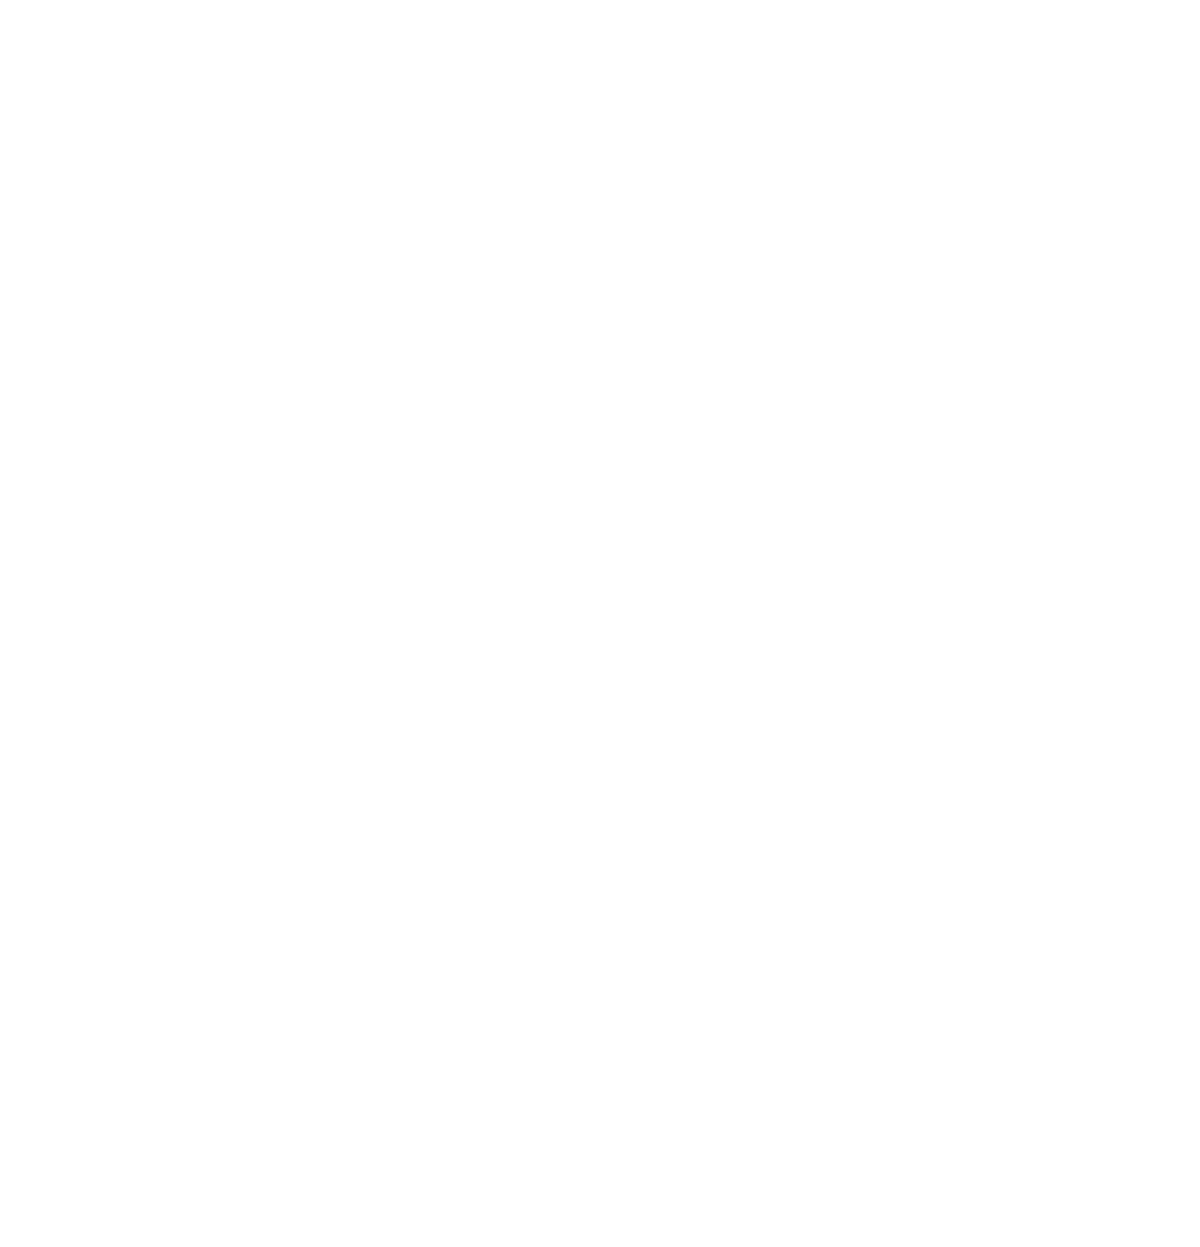 Sony music publishing logo